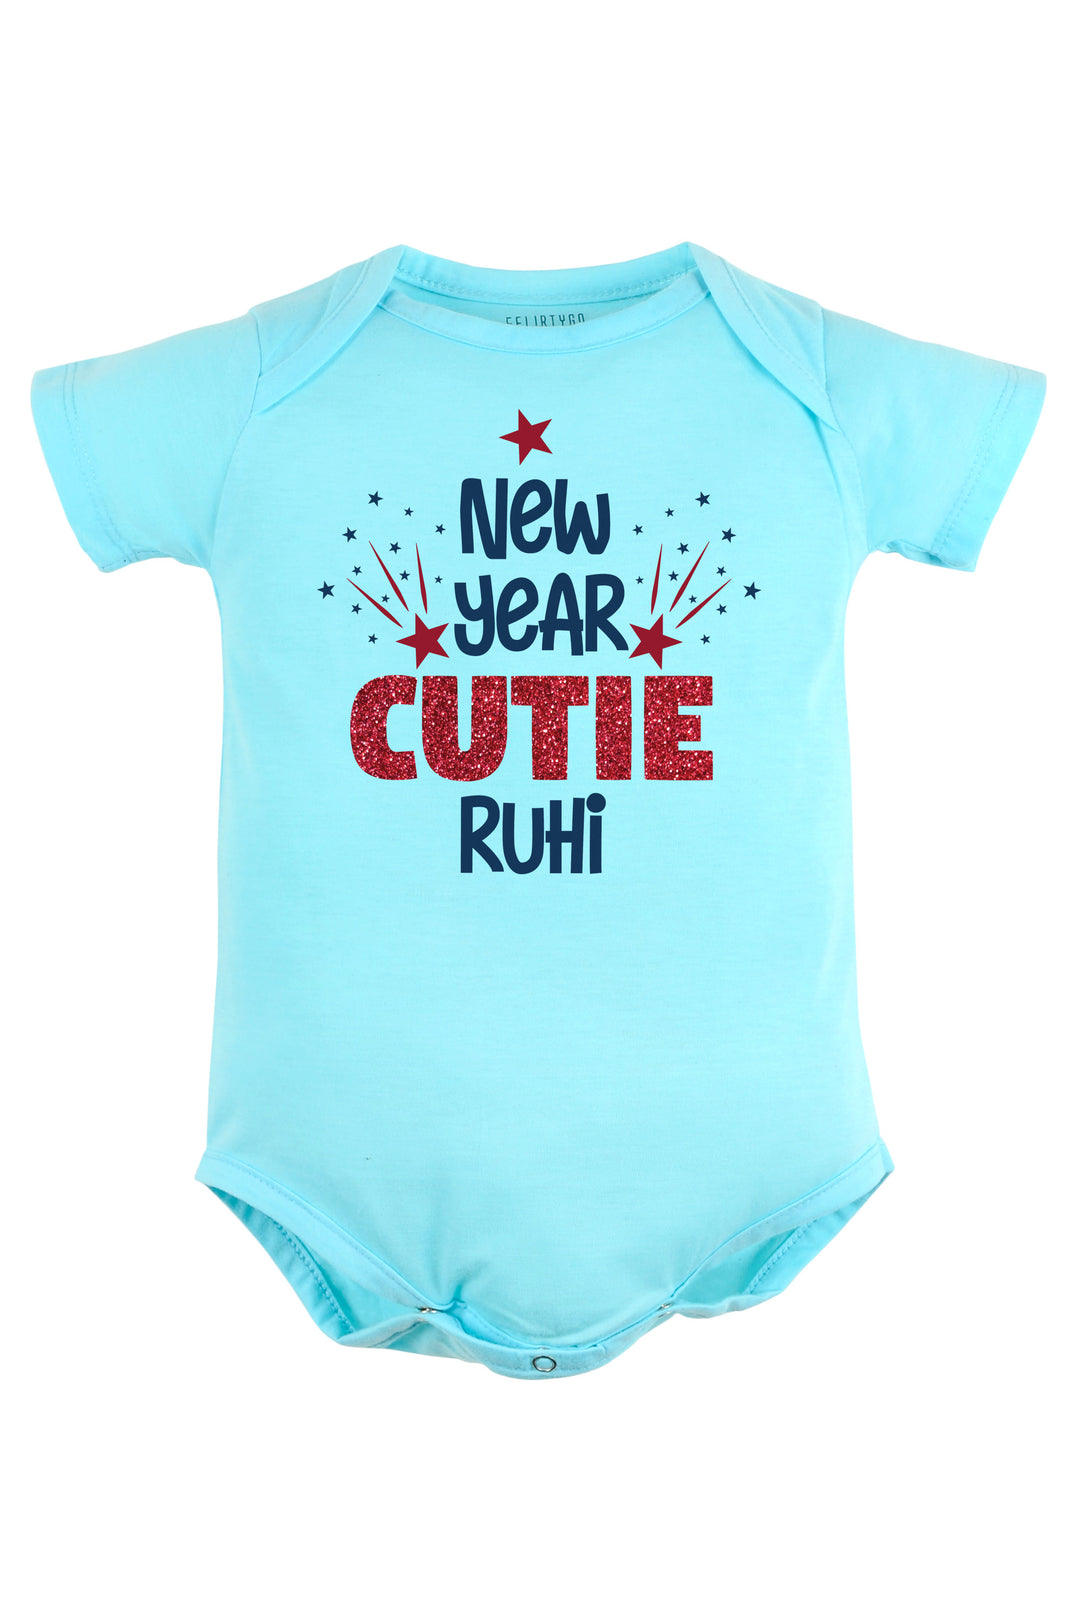 New Year Cutie Baby Romper | Onesies w/ Custom Name